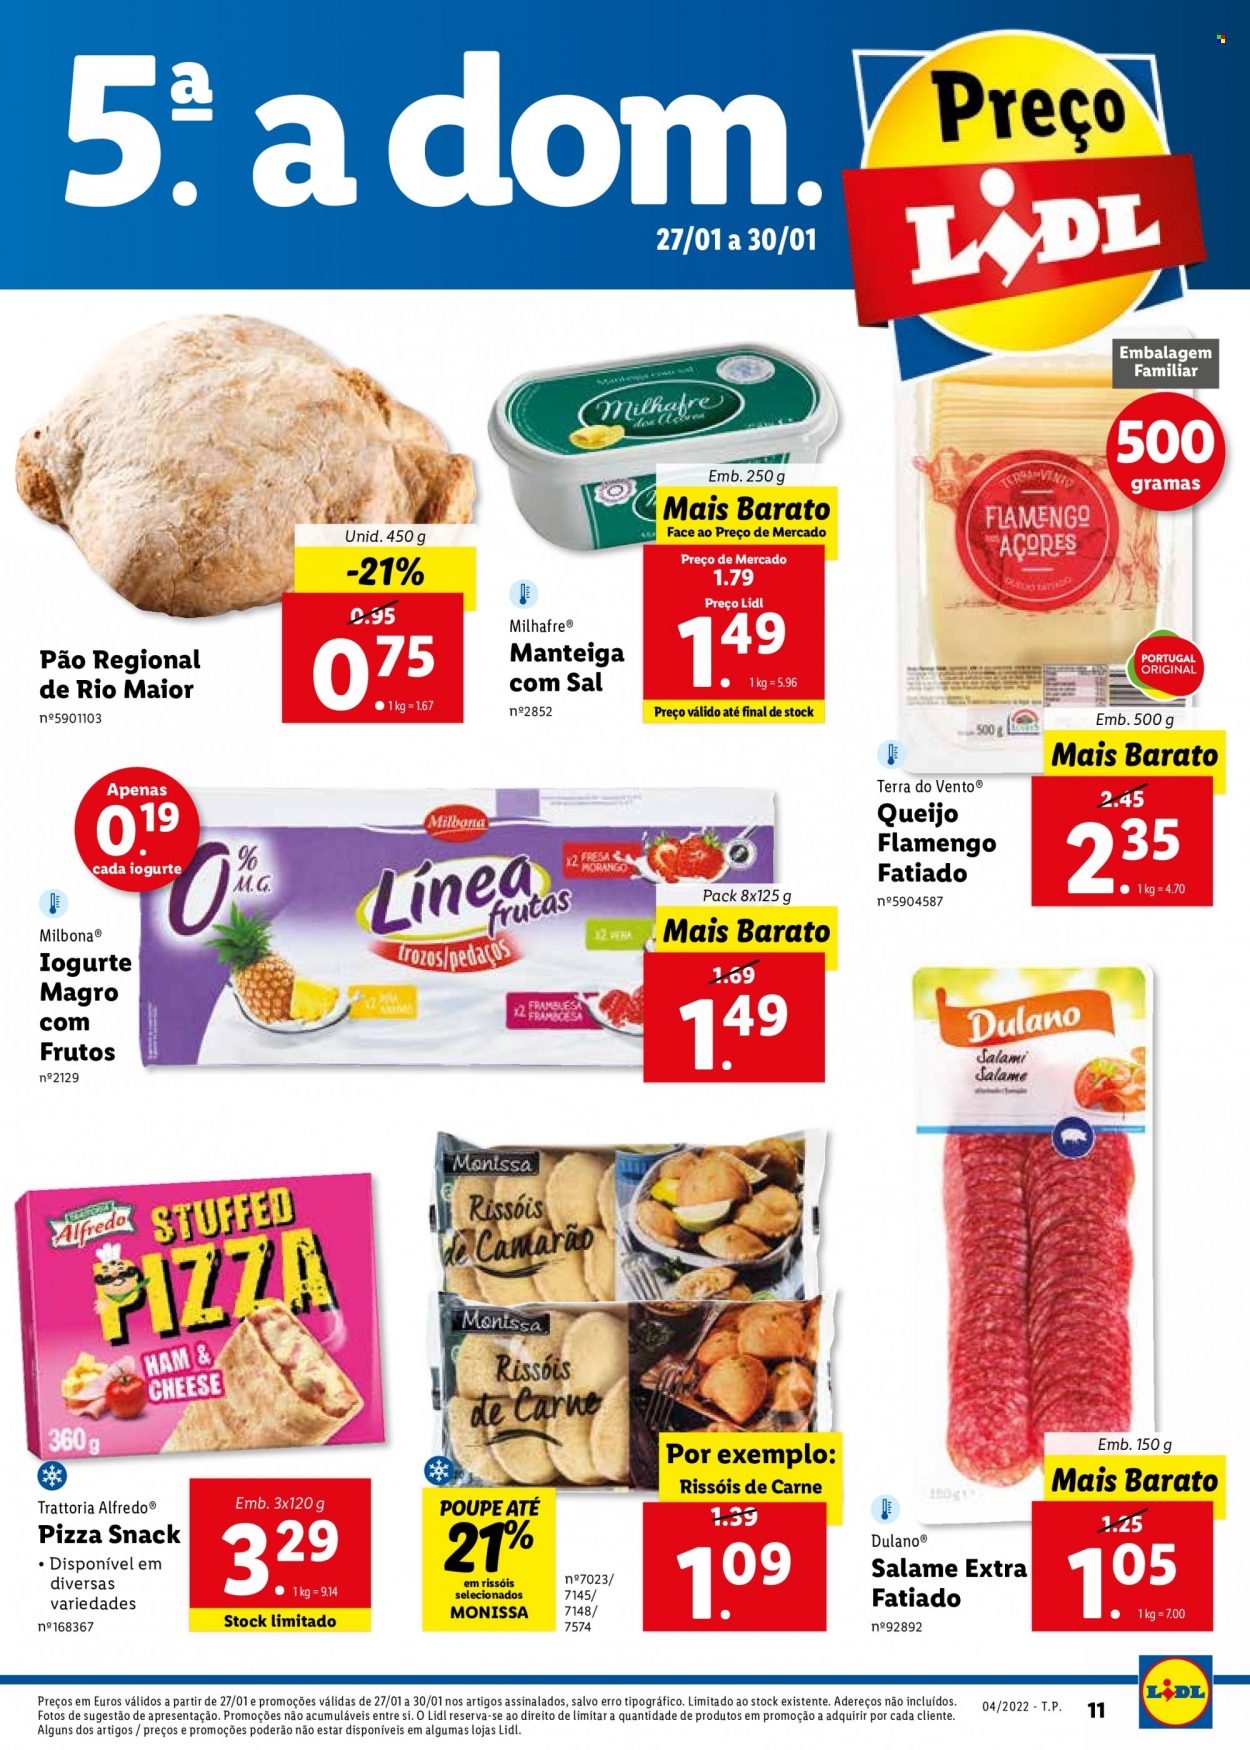 thumbnail - Folheto Lidl - 24.1.2022 - 30.1.2022 - Produtos em promoção - pão, pizza, rissois, queijo, queijo flamengo, iogurte, manteiga, manteiga com sal. Página 11.